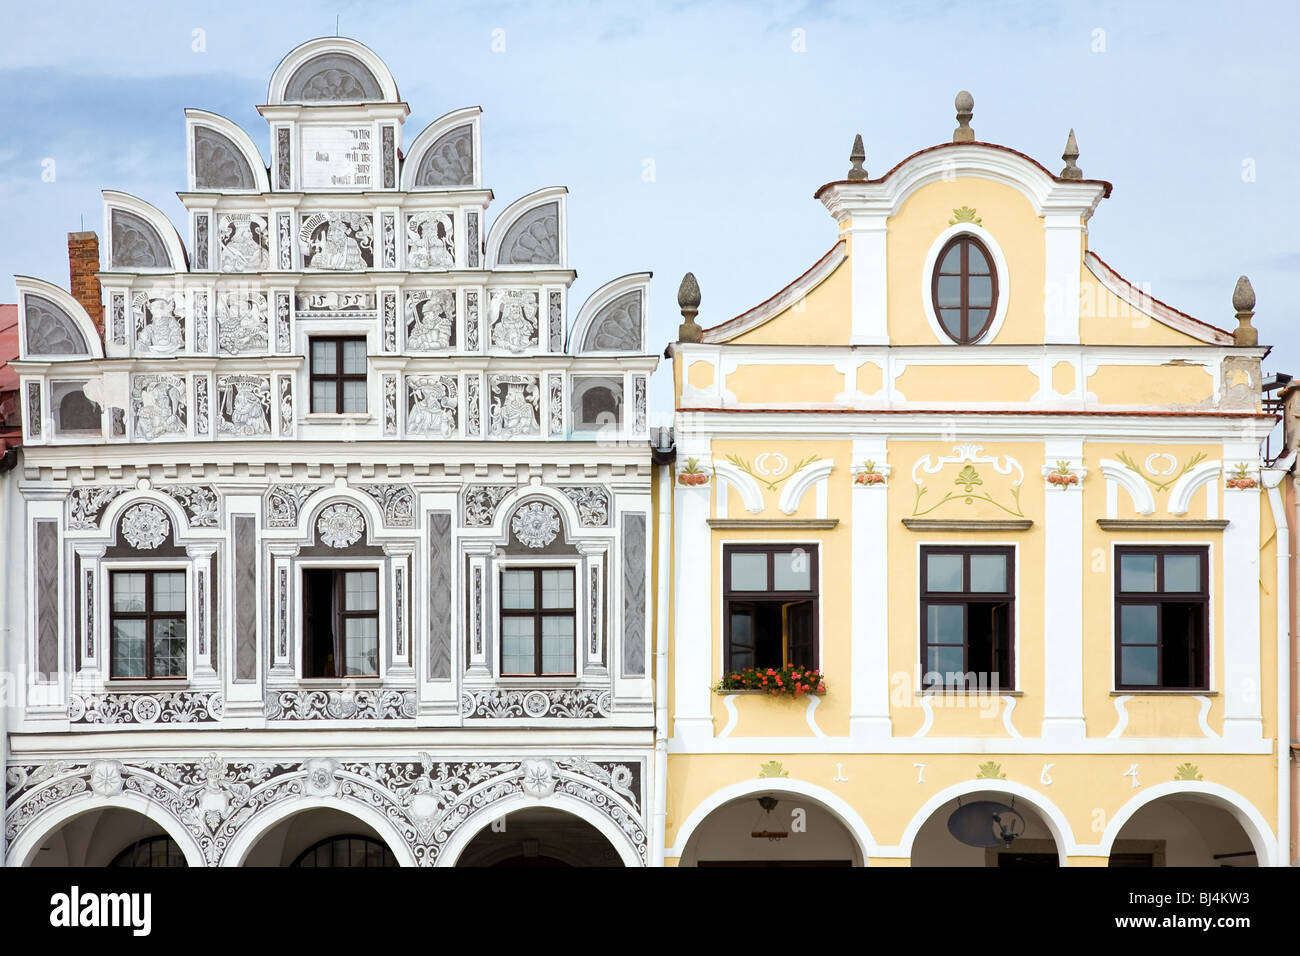 Pignon de façade de maisons de ville avec arcade sur square à Telc, Bohemia - République tchèque. Patrimoine protégé par l'UNESCO. Banque D'Images